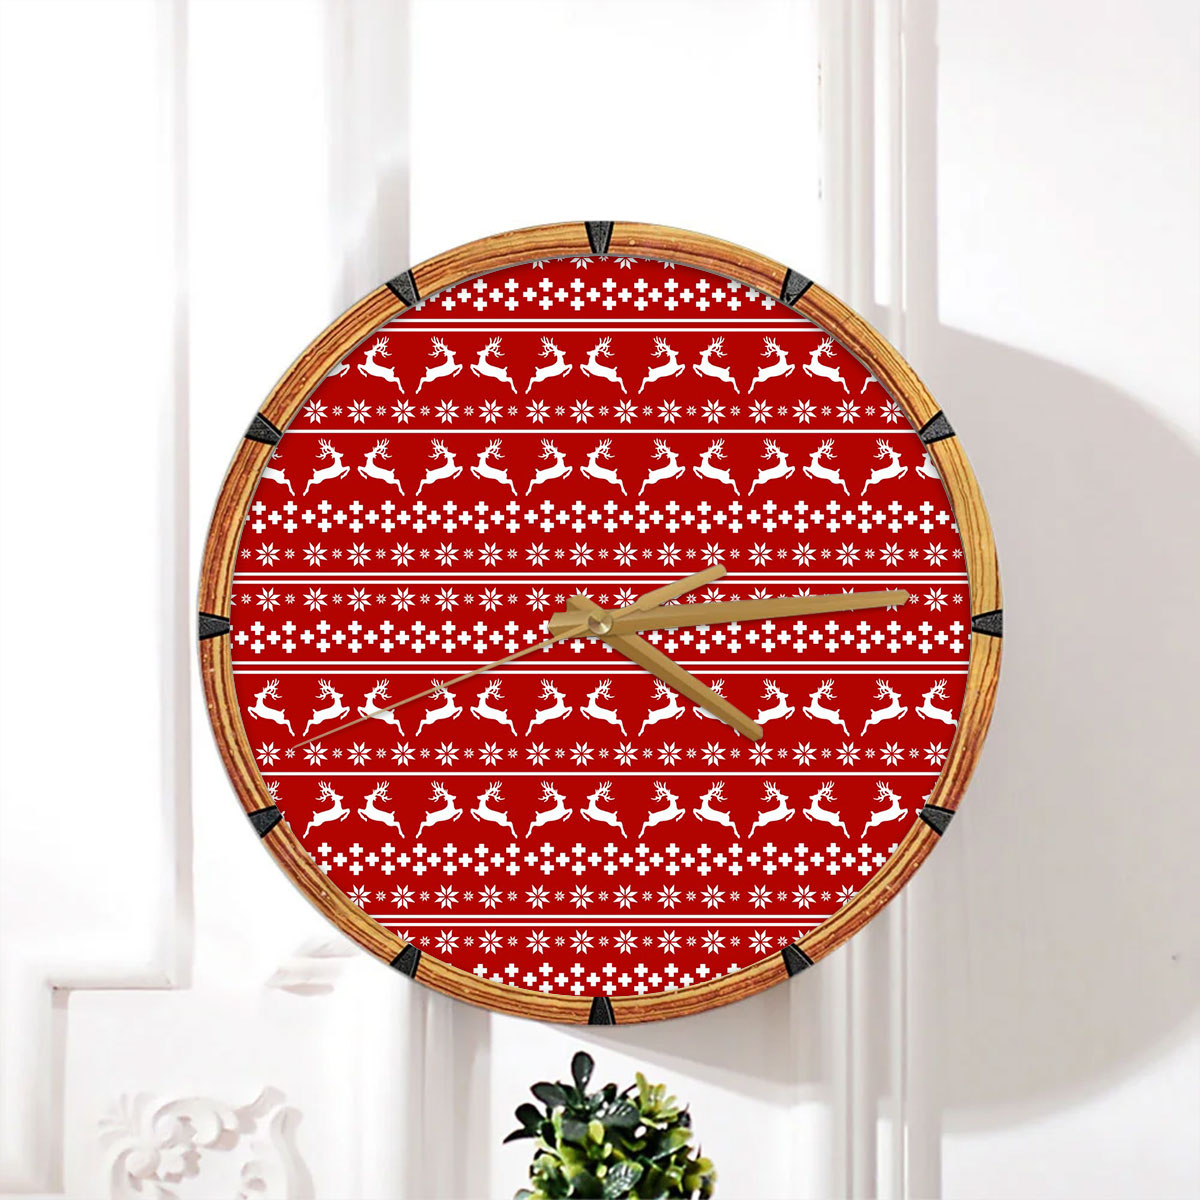 Christmas Reindeer, Snowflake Pattern Wall Clock